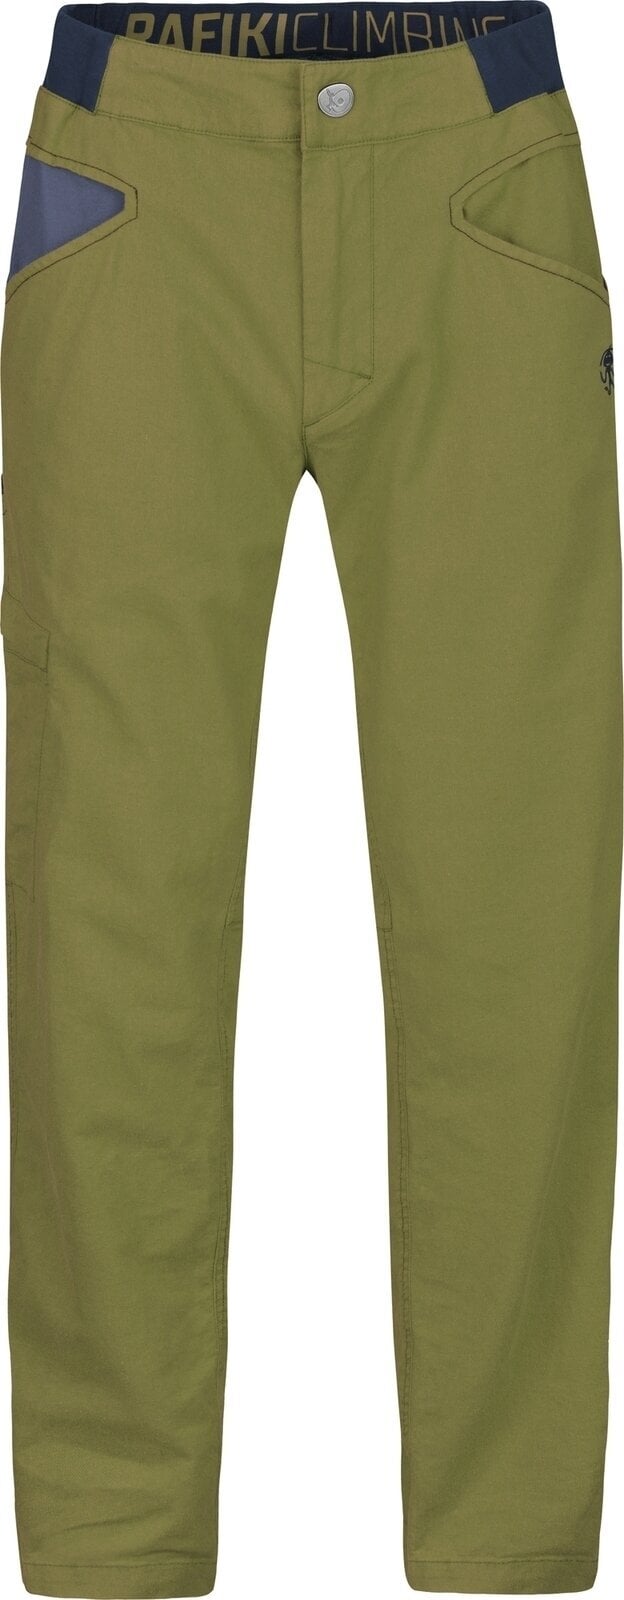 Pantalons outdoor Rafiki Grip Man Pants Avocado XL Pantalons outdoor